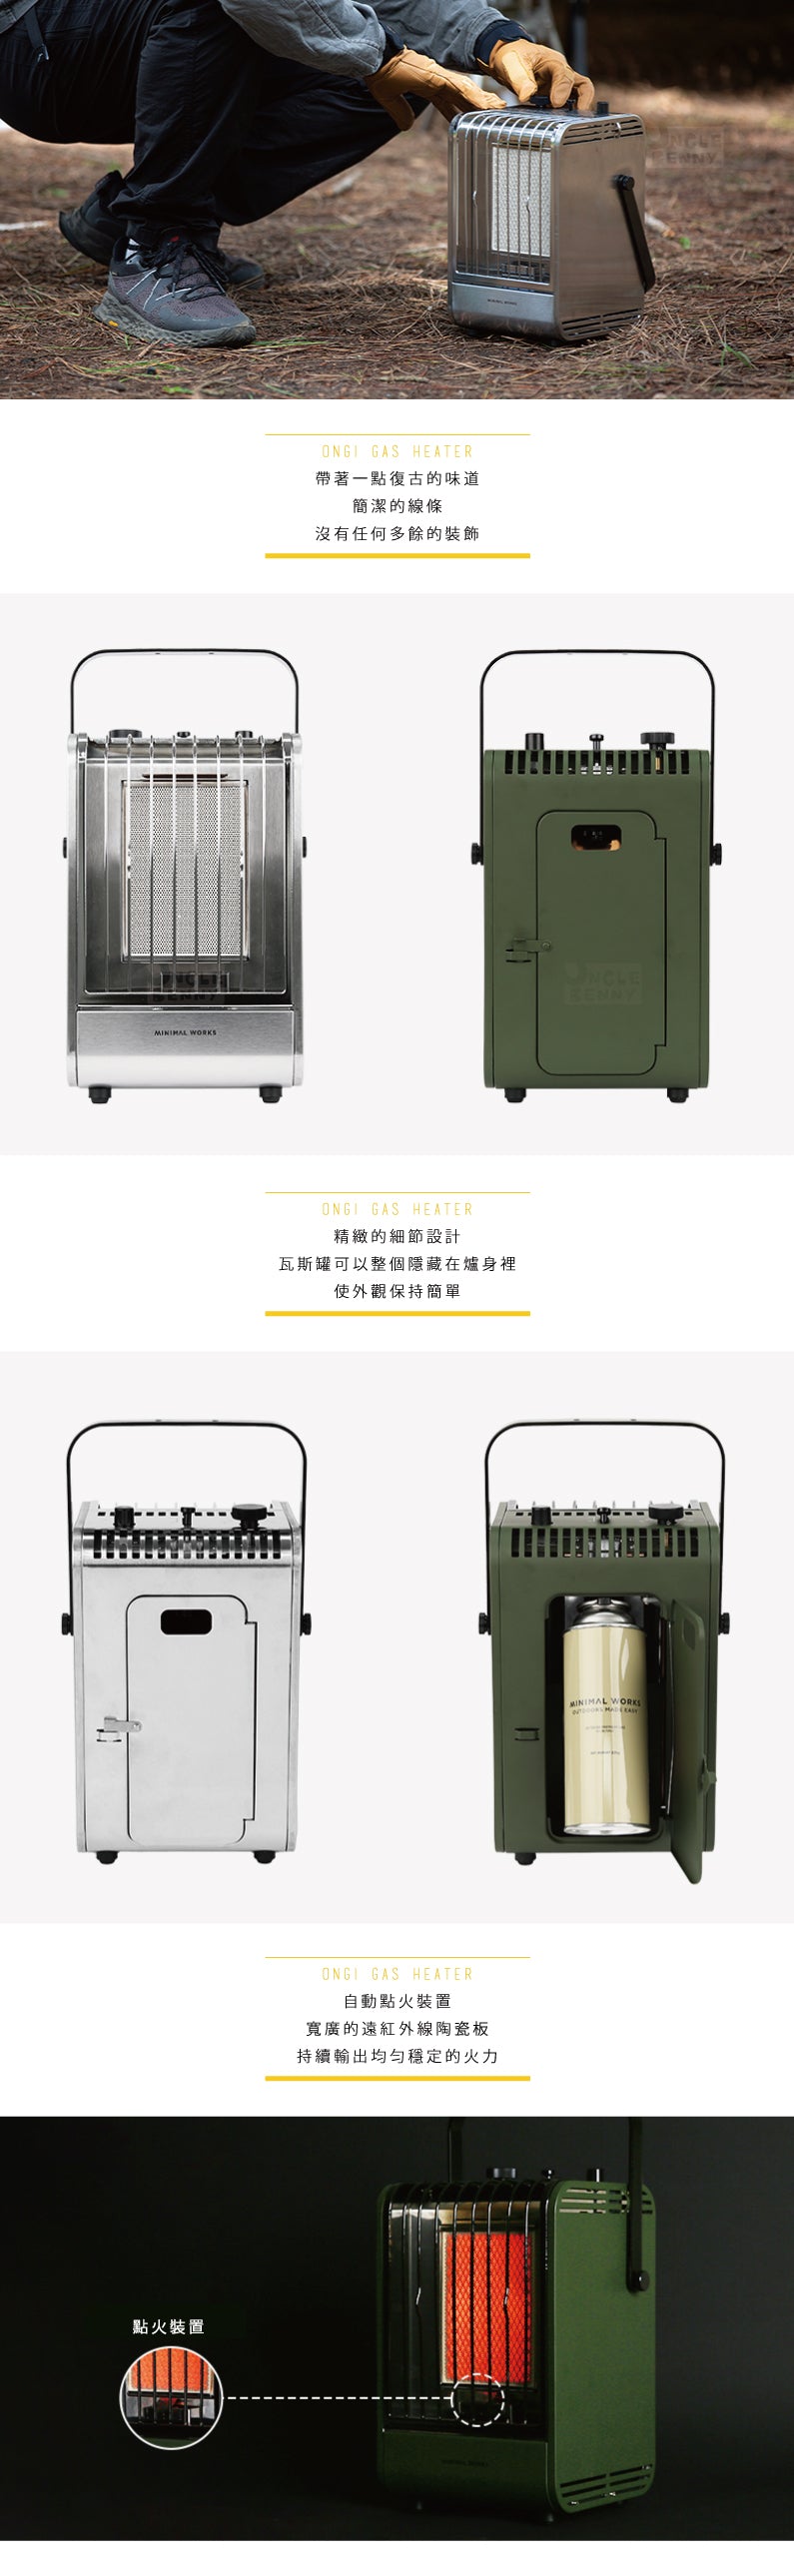 韓國Minimal Works | 暖和的溫吉瓦斯暖爐 | ONGI Gas Heater 金屬銀/橄欖綠 (公司貨) 瓦斯暖爐 露營暖爐